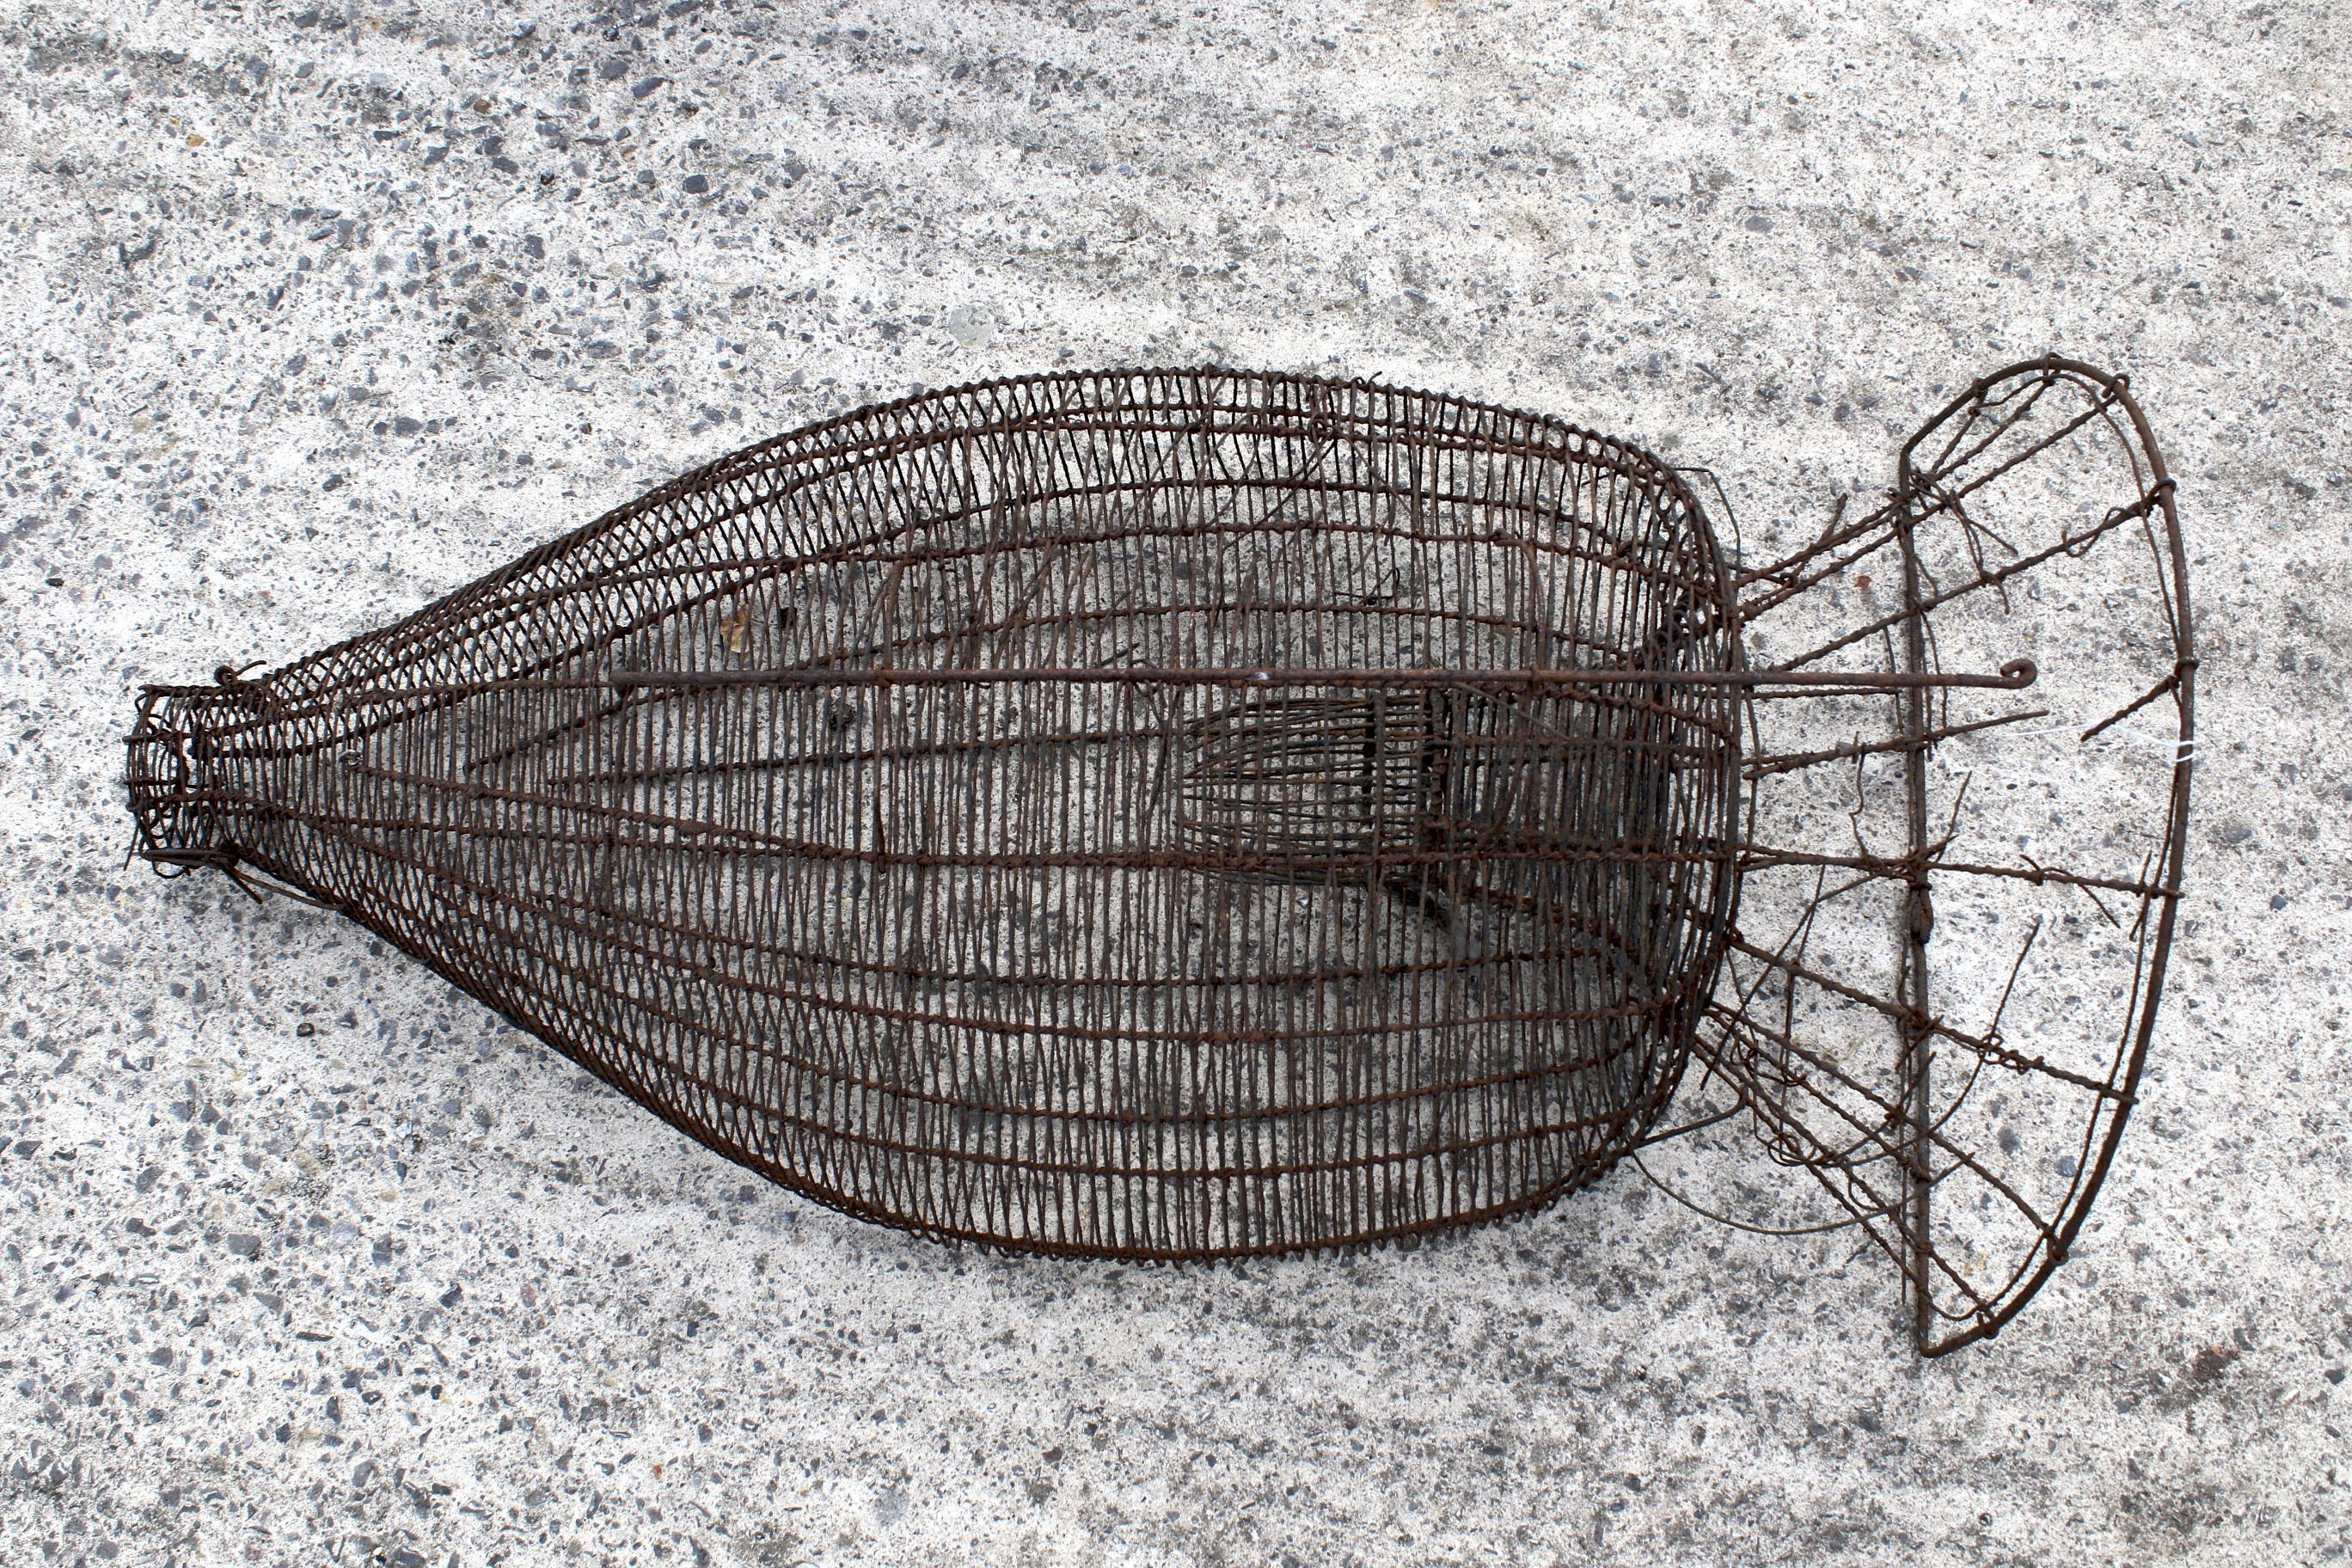 A vintage metal fish/eel trap.